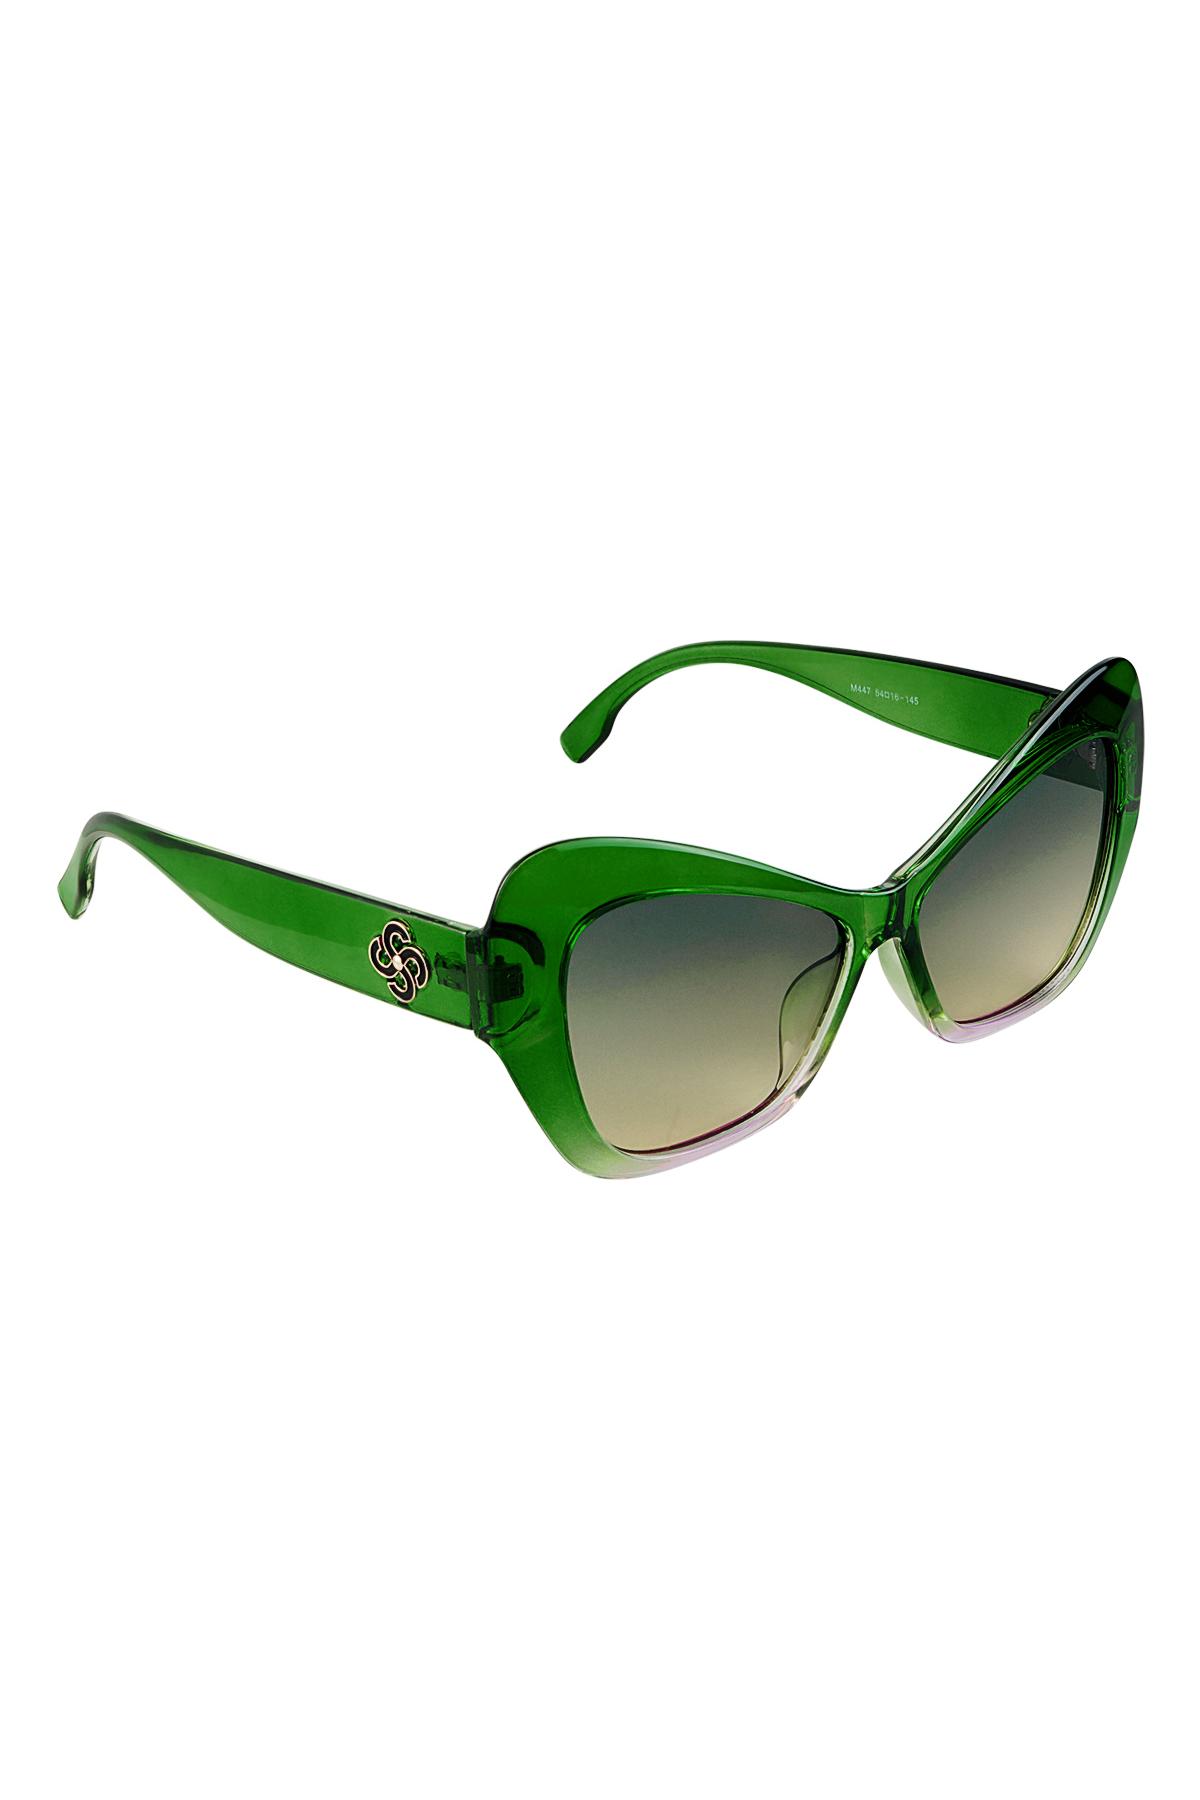 Dichiarazione sugli occhiali da sole Green PC One size h5 